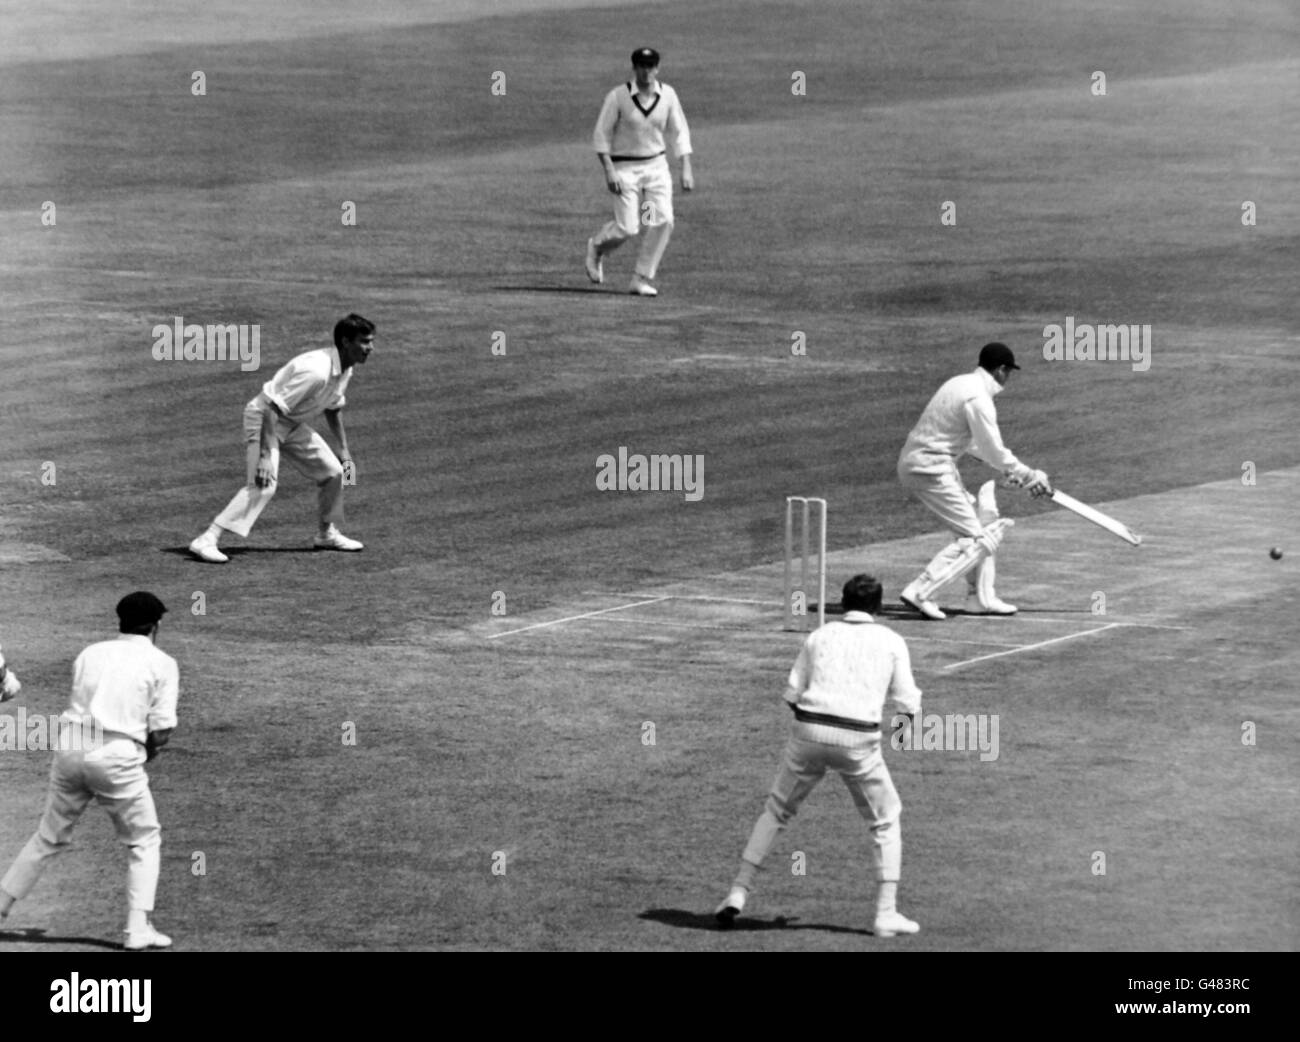 Cricket - zweites Testspiel - England gegen Australien - erster Tag - Lord's. Geoff Boykott, England, spielt einen defensiven Schlag gegen einen Ball von Neil Hawke. Stockfoto